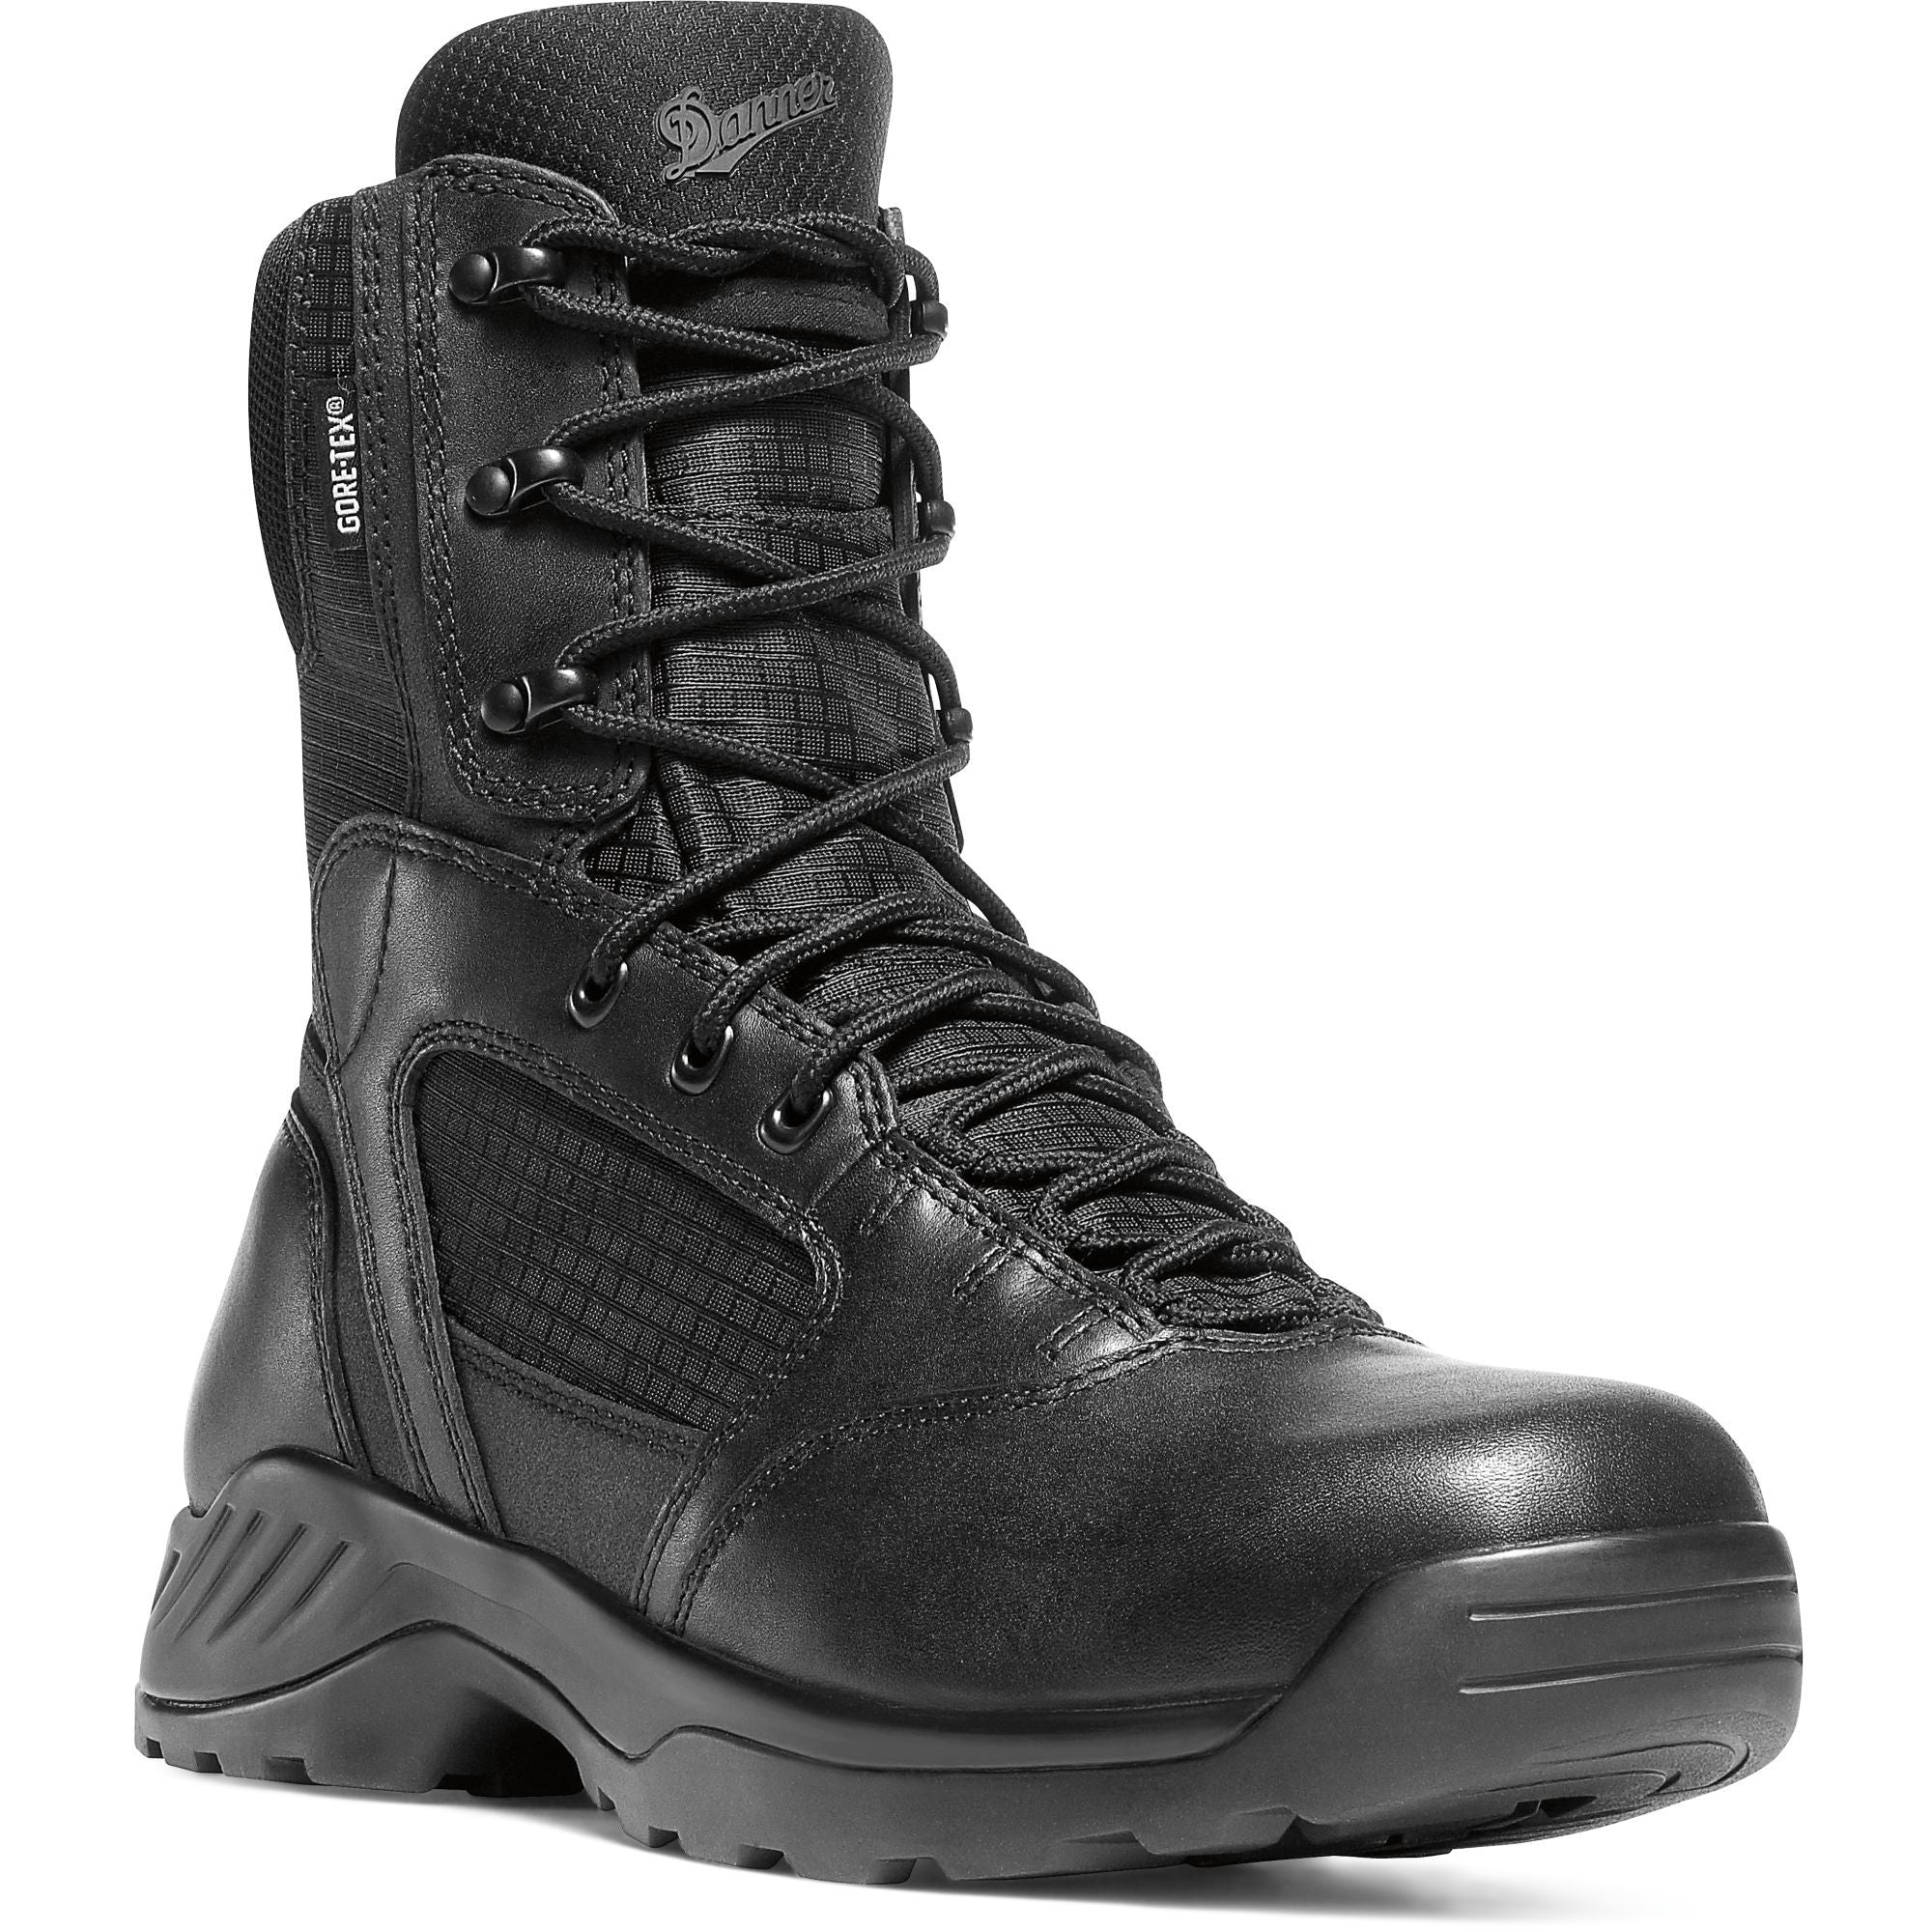 Danner Men's Kinetic 8" Side Zip Waterproof Duty Boot - Black - 28012 7 / Medium / Black - Overlook Boots